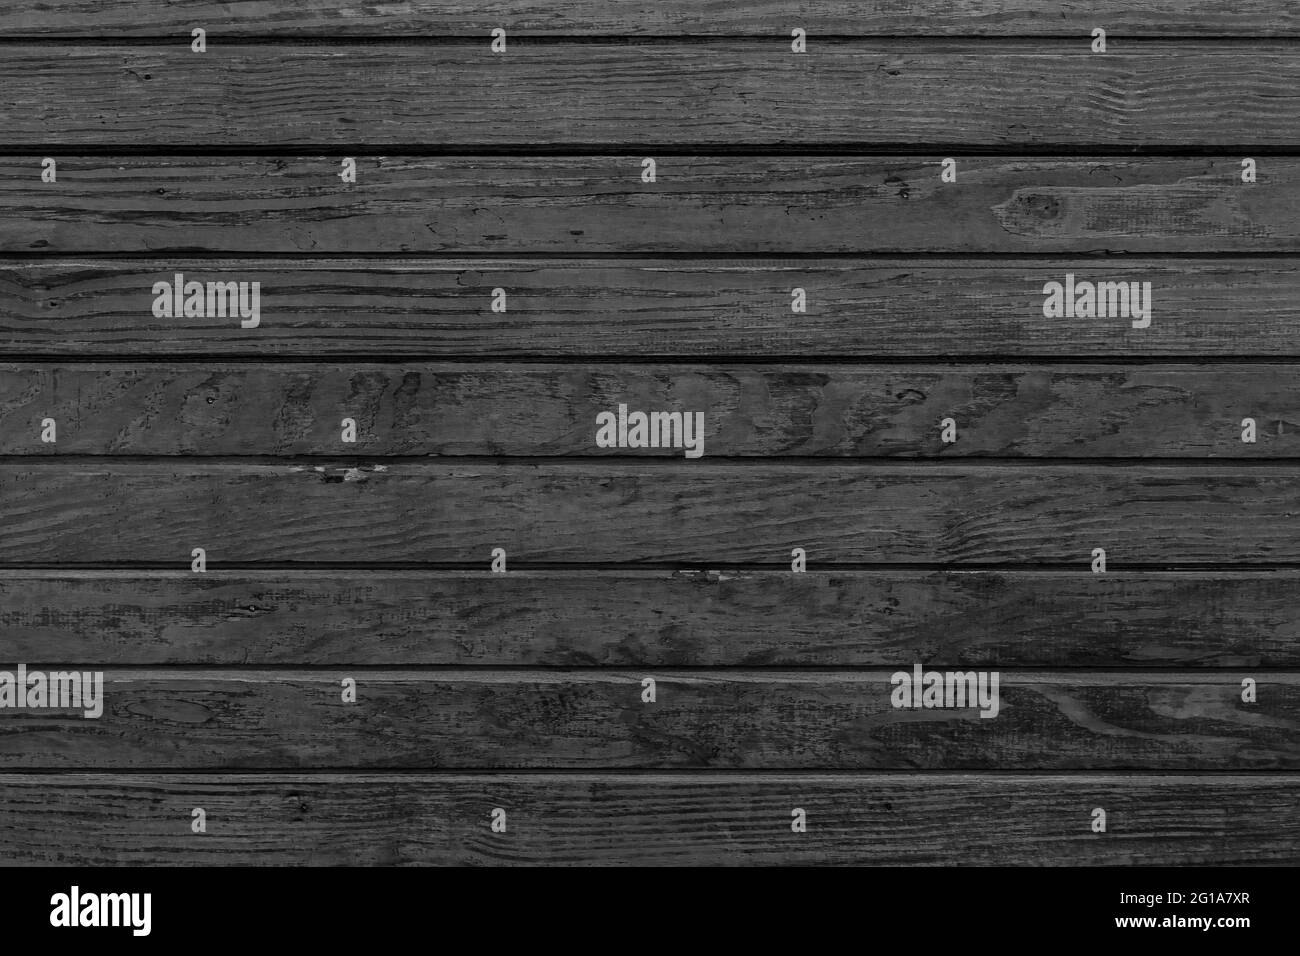 Arrière-plan horizontal en bois noir. Arrière-plan en bois sombre avec texture en bois noir. Panneau texturé en bois foncé avec planches horizontales. Banque D'Images